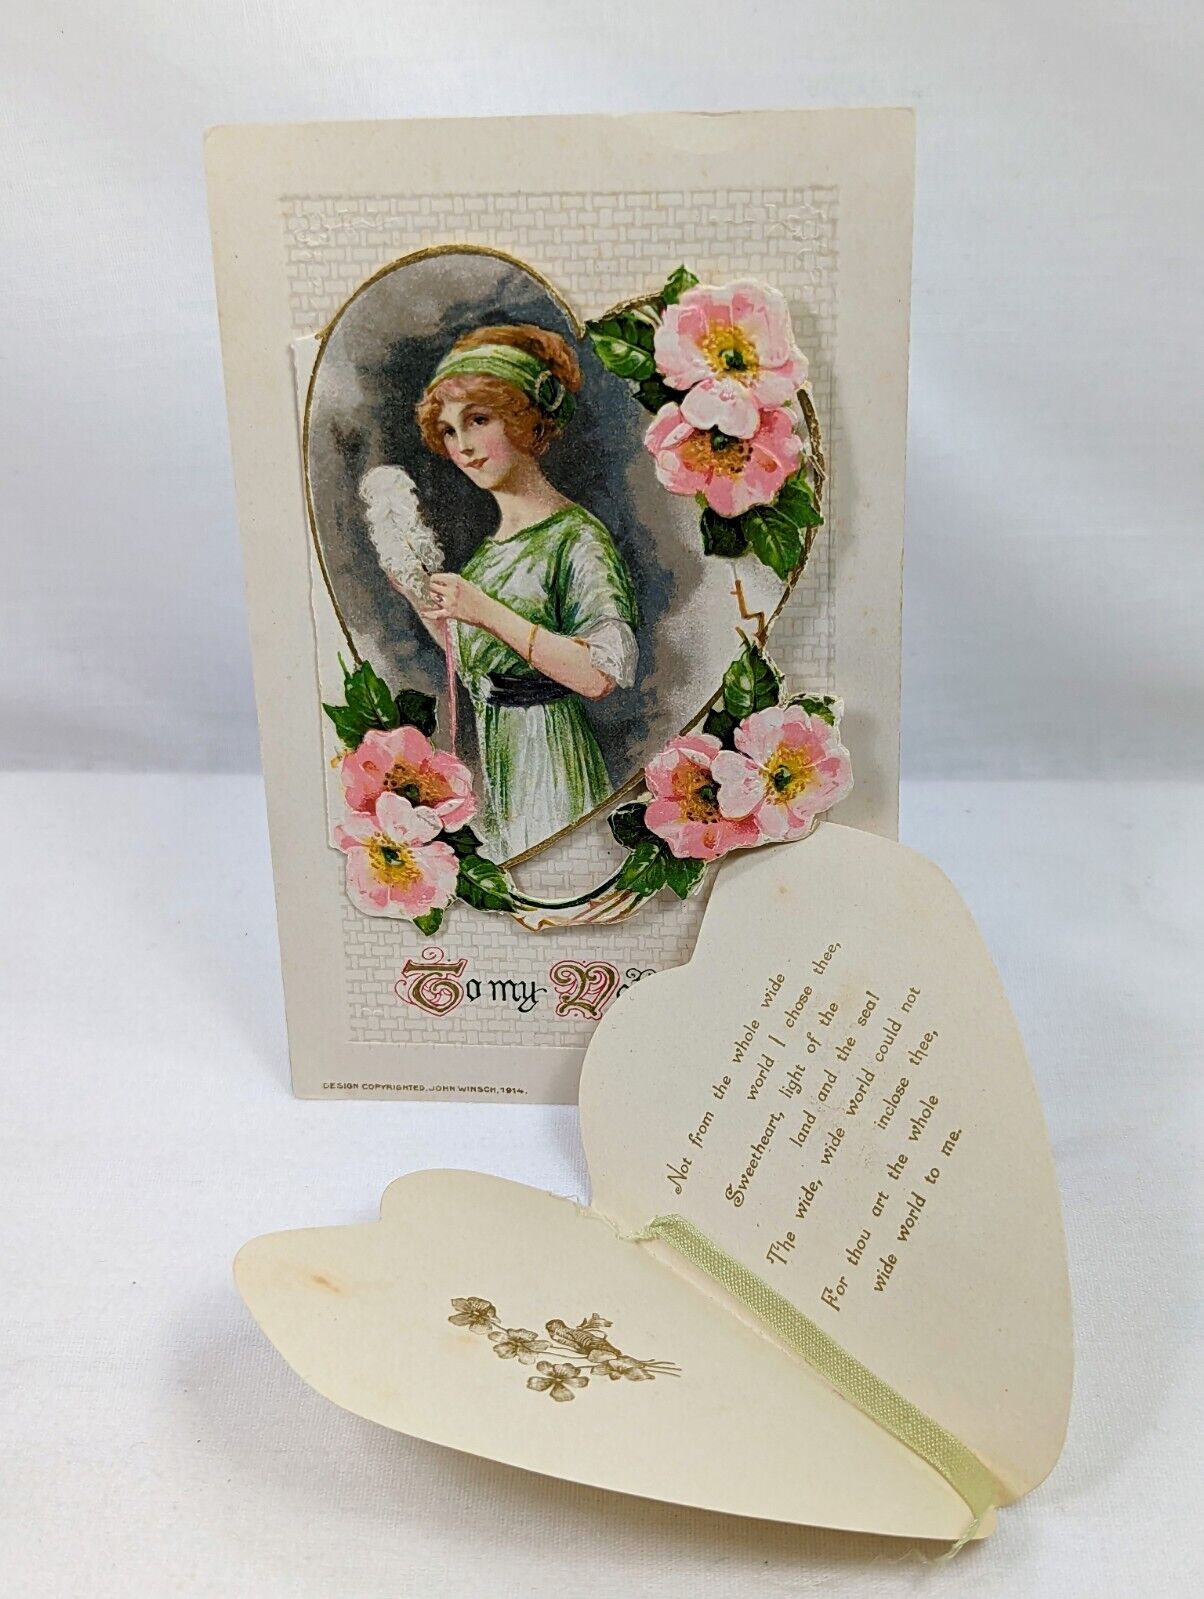 Diecut Embossed Appliqué Valentine Day Greetings Postcard SCHMUCKER WINSCH 1914 